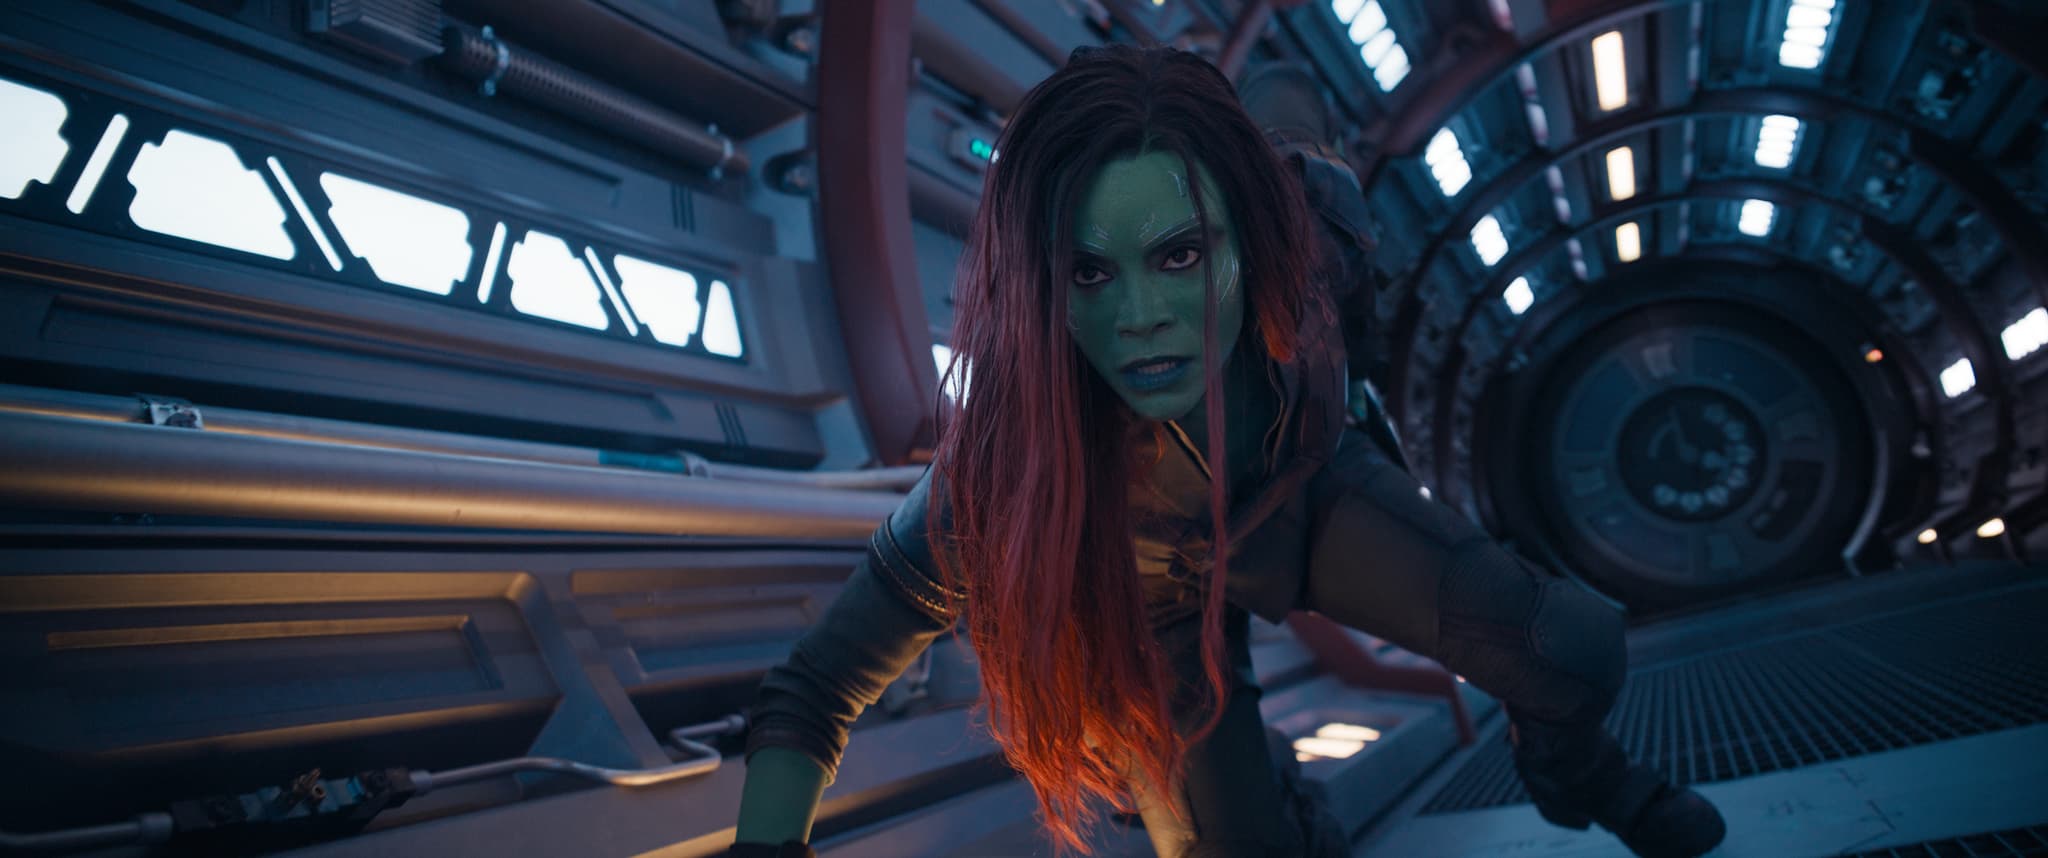 Zoe Saldaña as Gamora in "Guardians of the Galaxy Vol. 3"